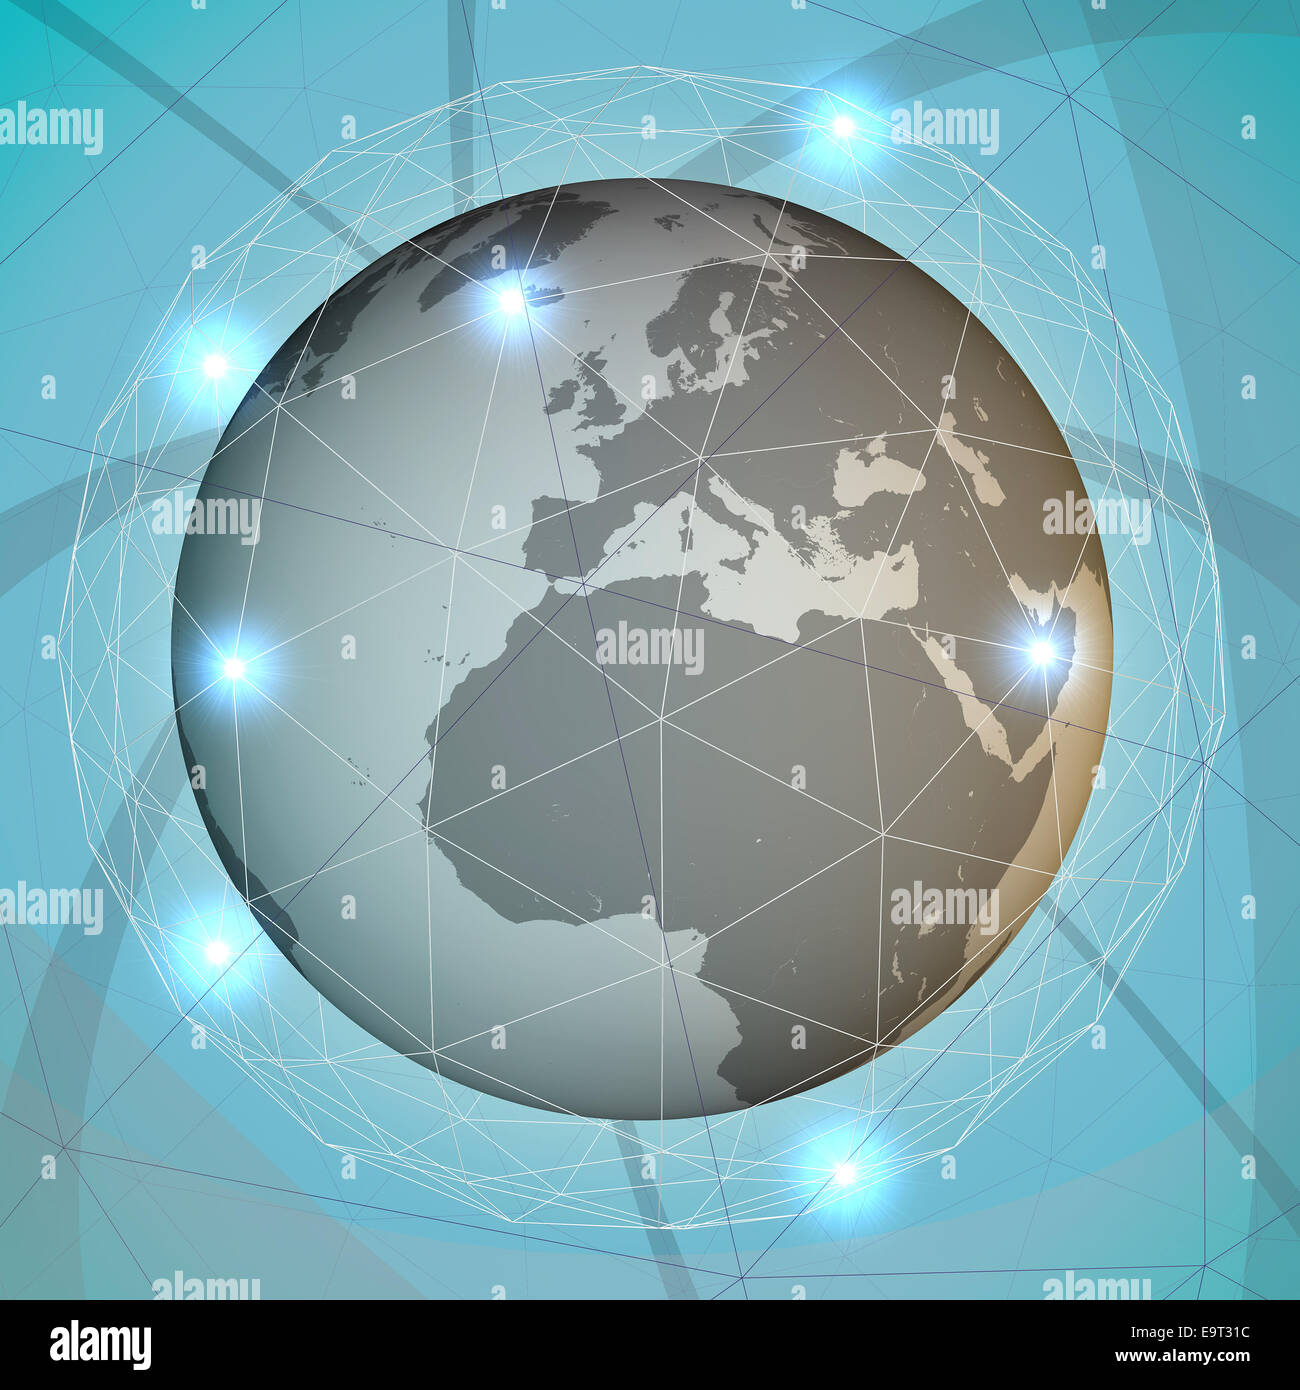 World globalization network, internet, communicate Stock Photo